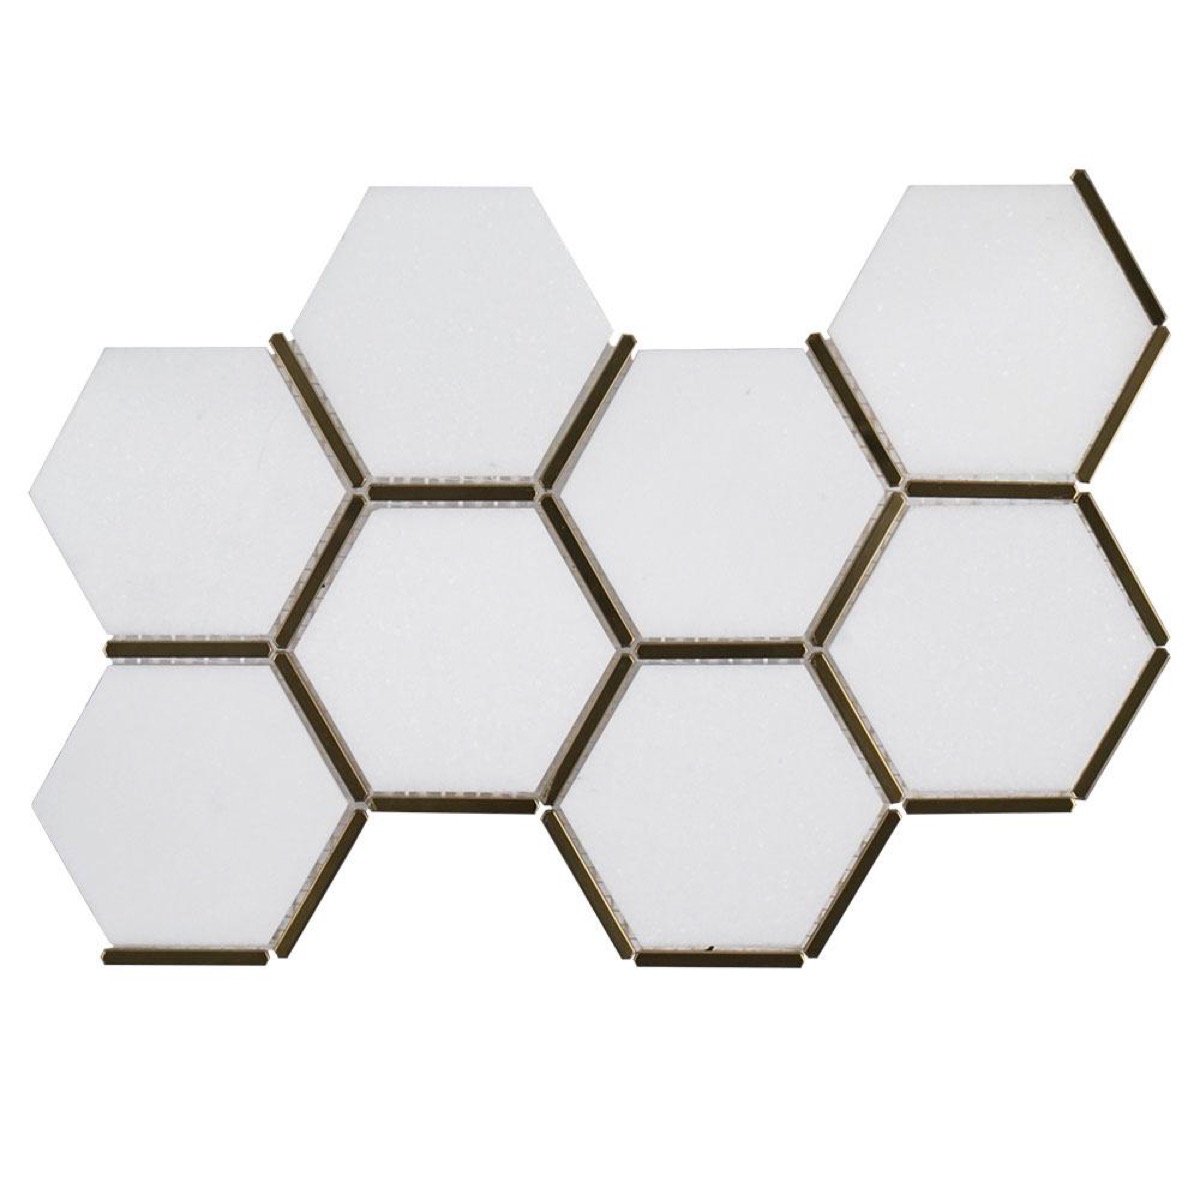 white hexagon tiles with gold edges